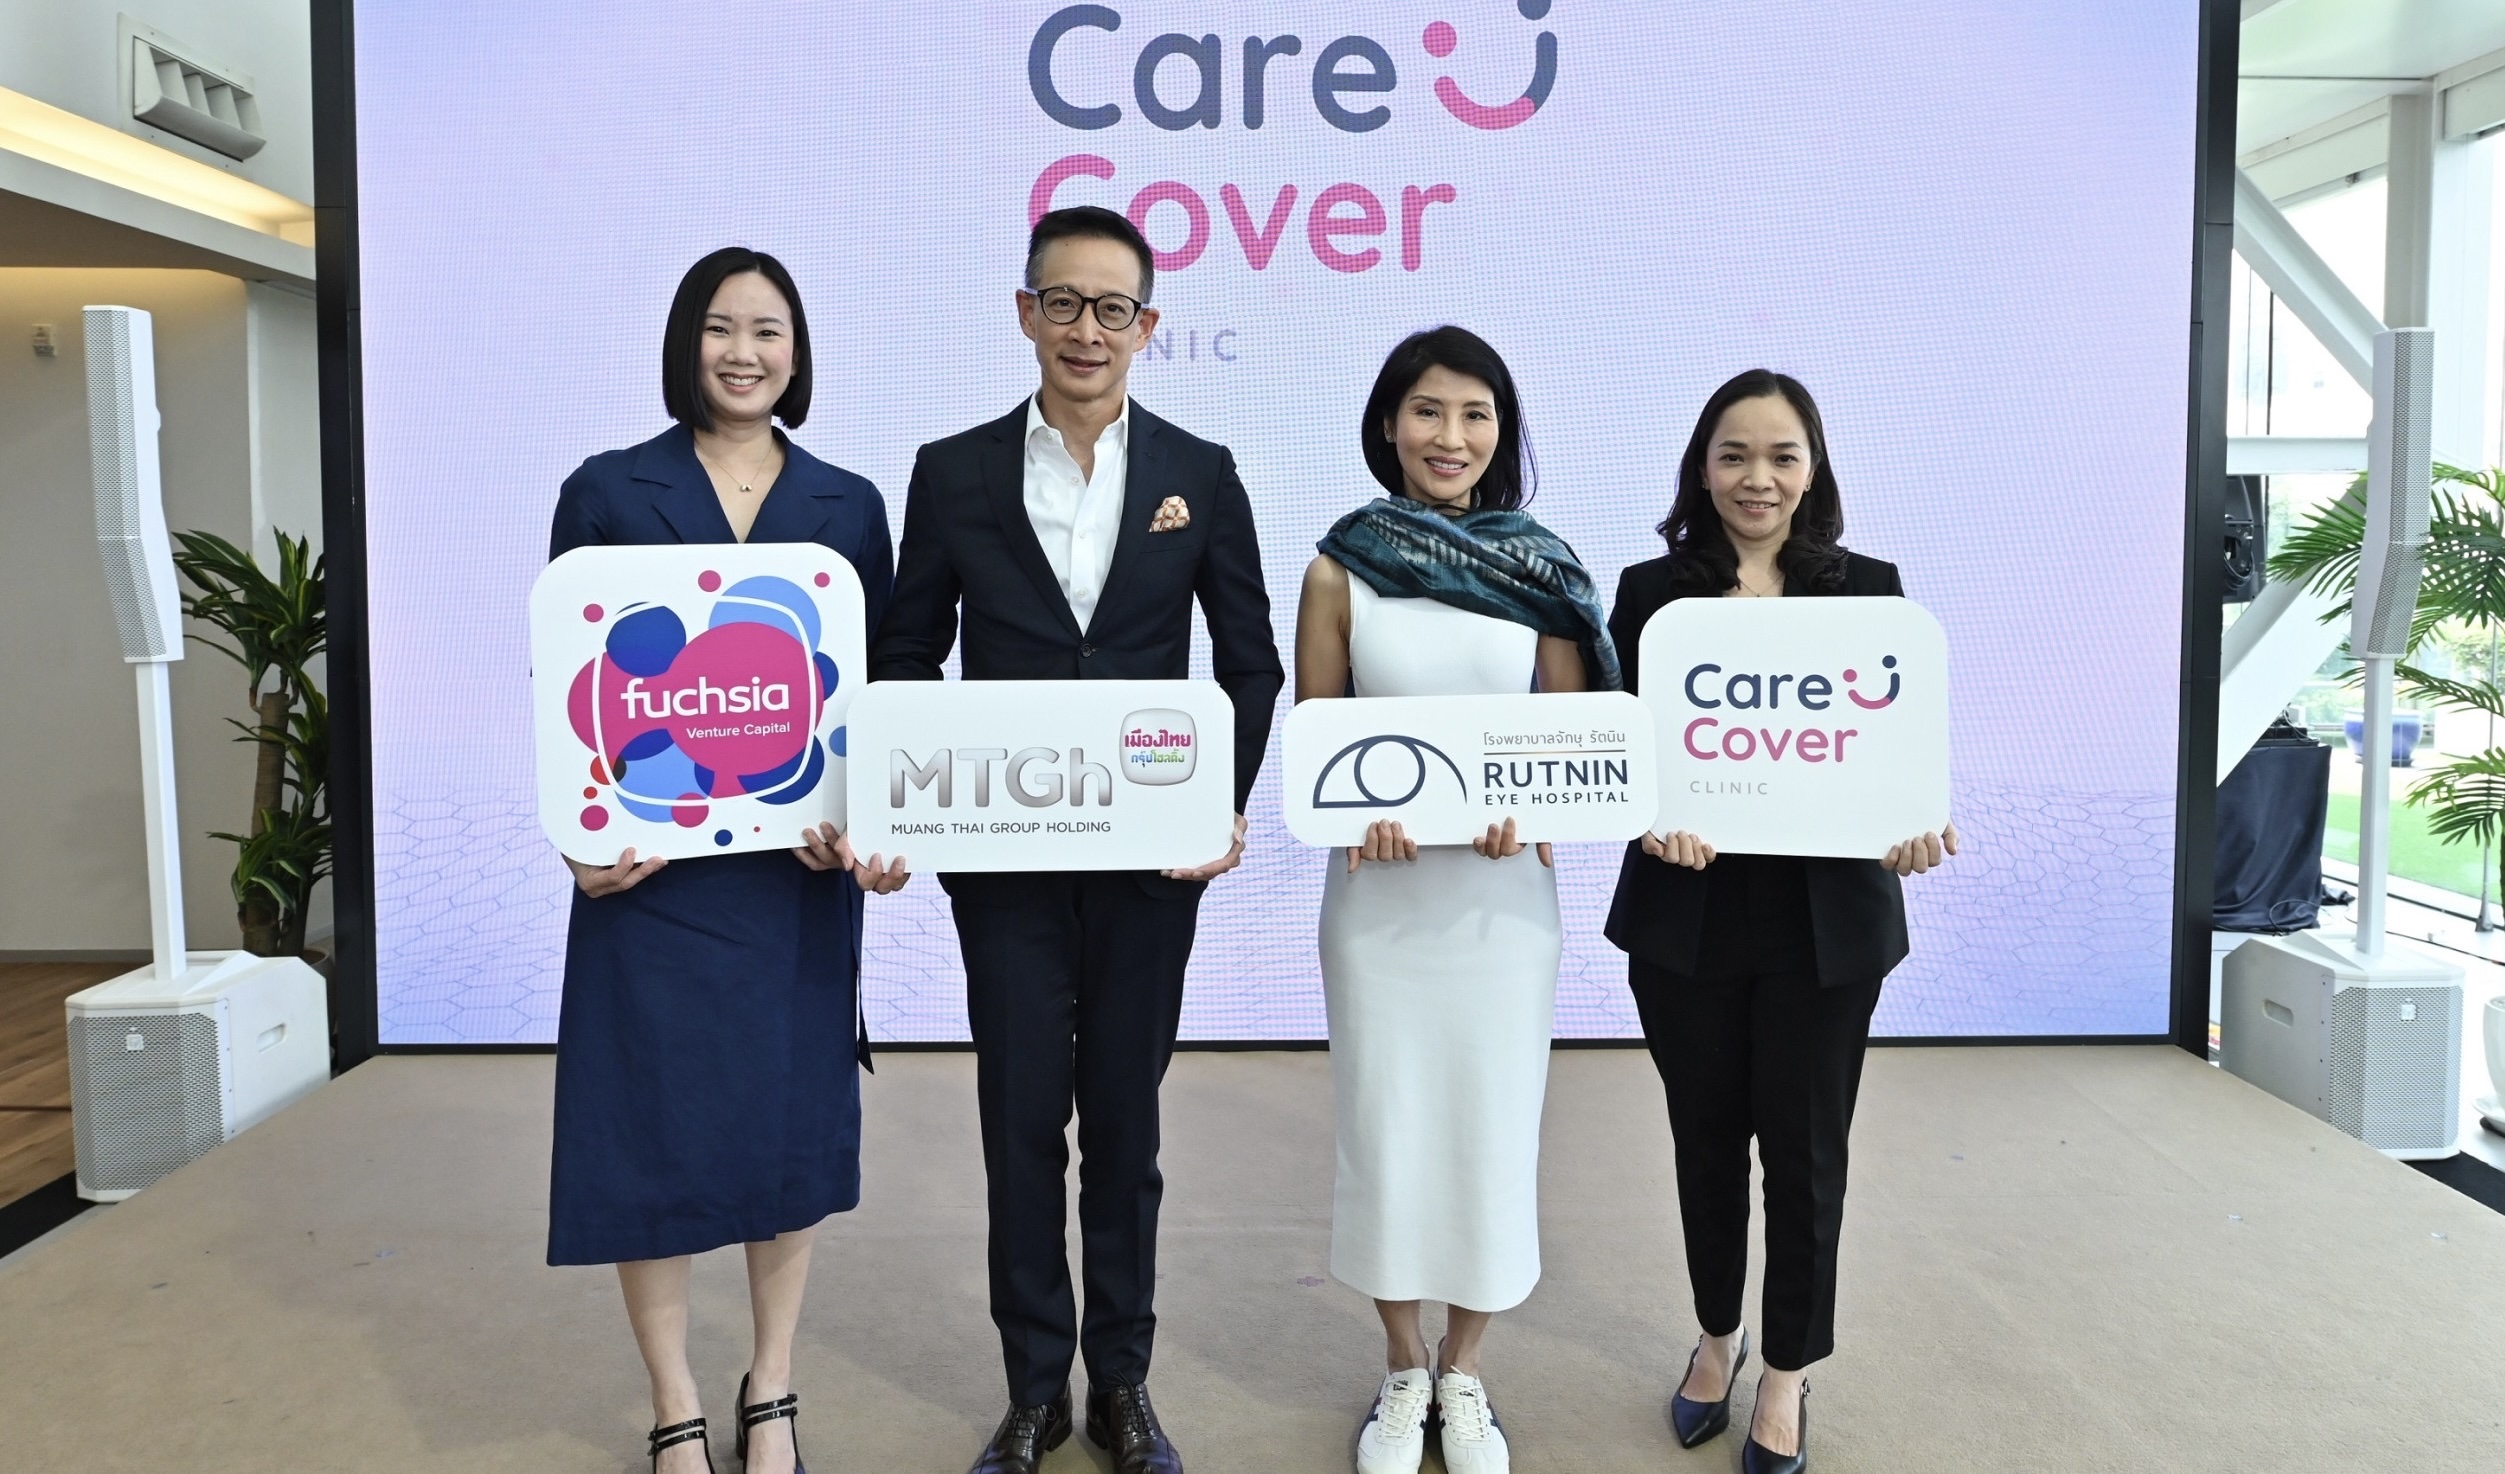 ผนึกกำลังครั้งสำคัญ!  เปิดตัว “แคร์คัฟเวอร์ สหคลินิก” ด้วยความร่วมมือกันระหว่าง Fuchsia Venture Capital และ โรงพยาบาลจักษุ รัตนินทางเลือกใหม่สำหรับการรักษาระดับปฐมภูมิ (Primary Care) ในประเทศไทย